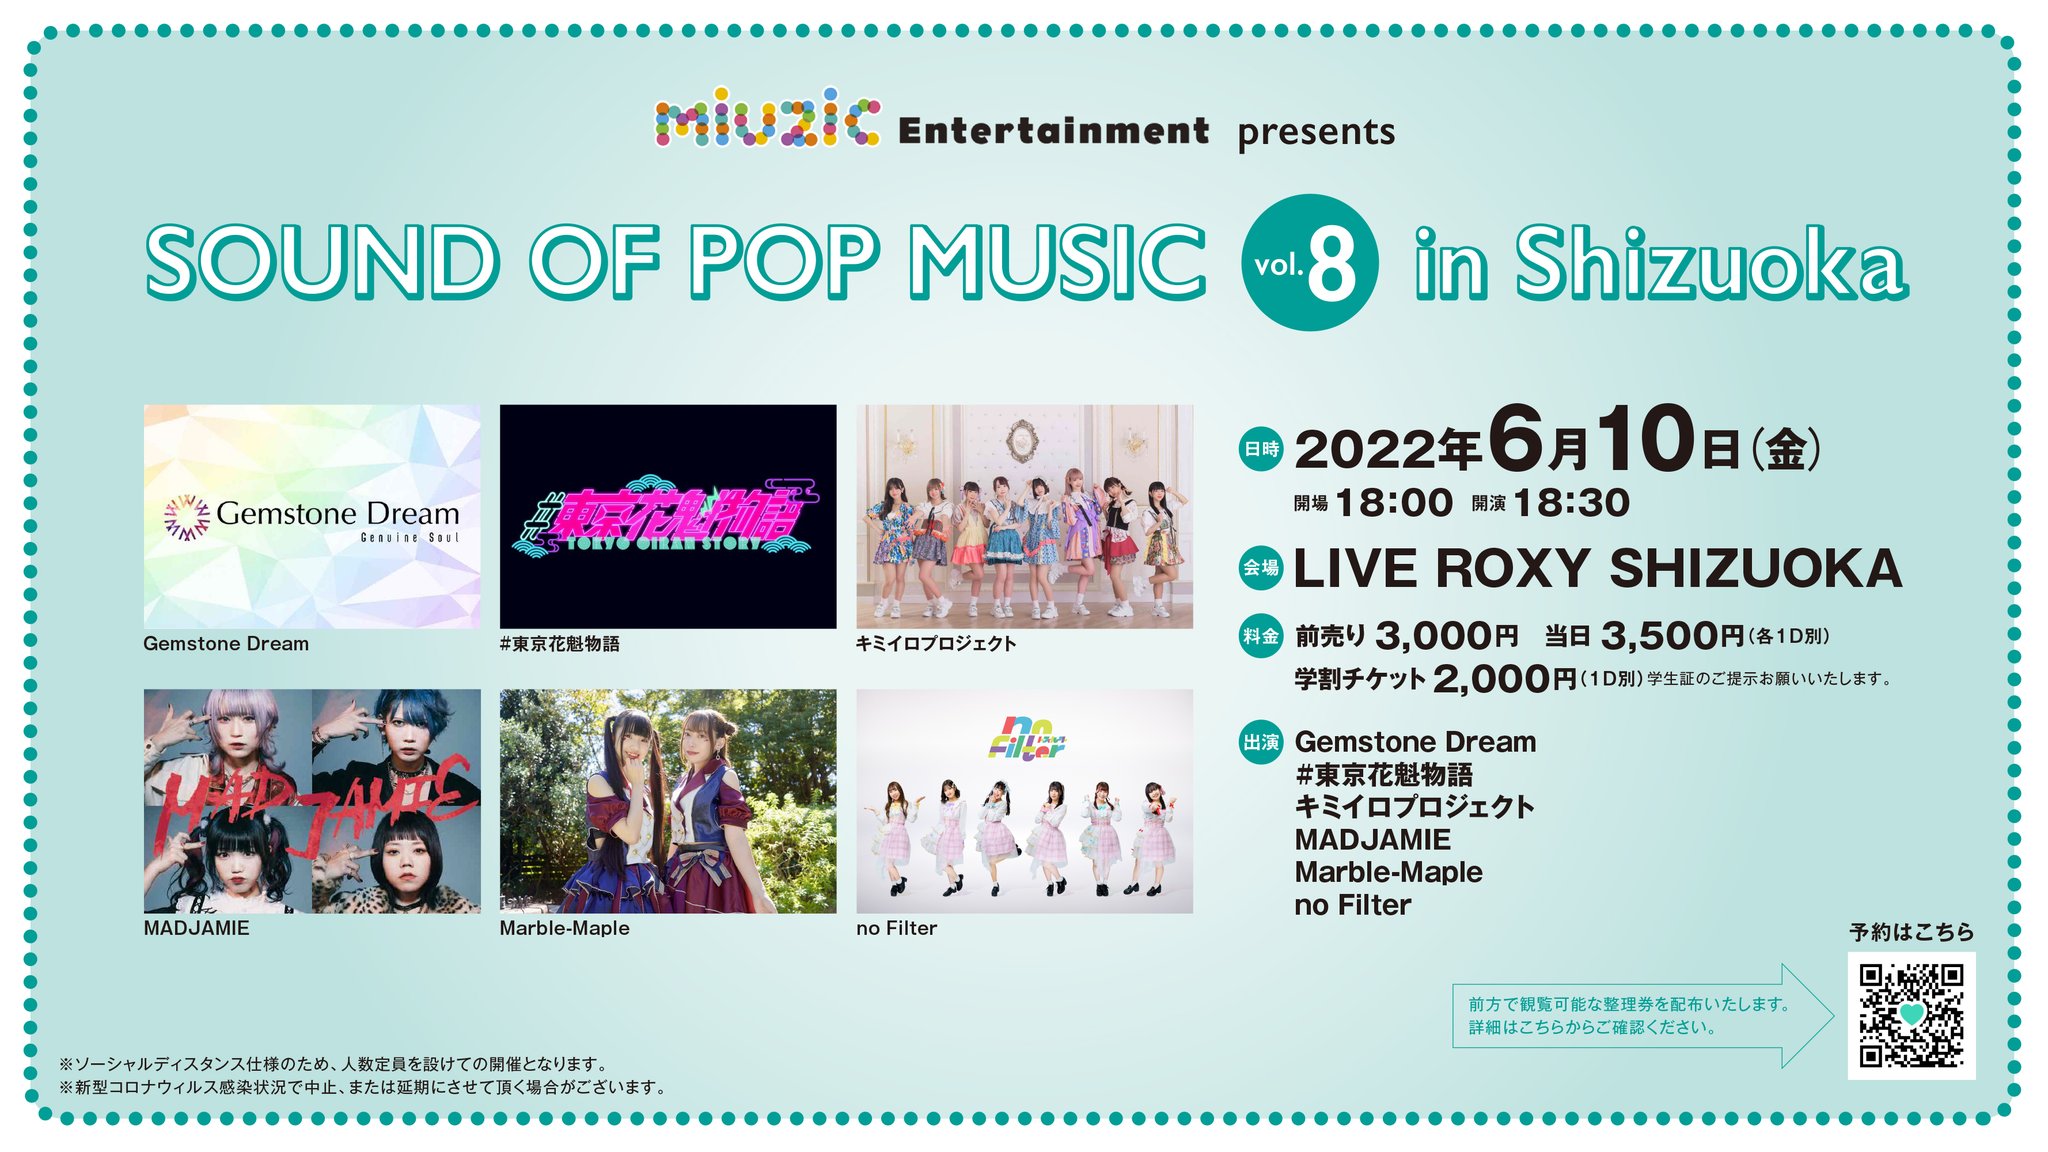 6/10(金) miuzic presents 「SOUND OF POP MUSIC vol.8 in Shizuoka」